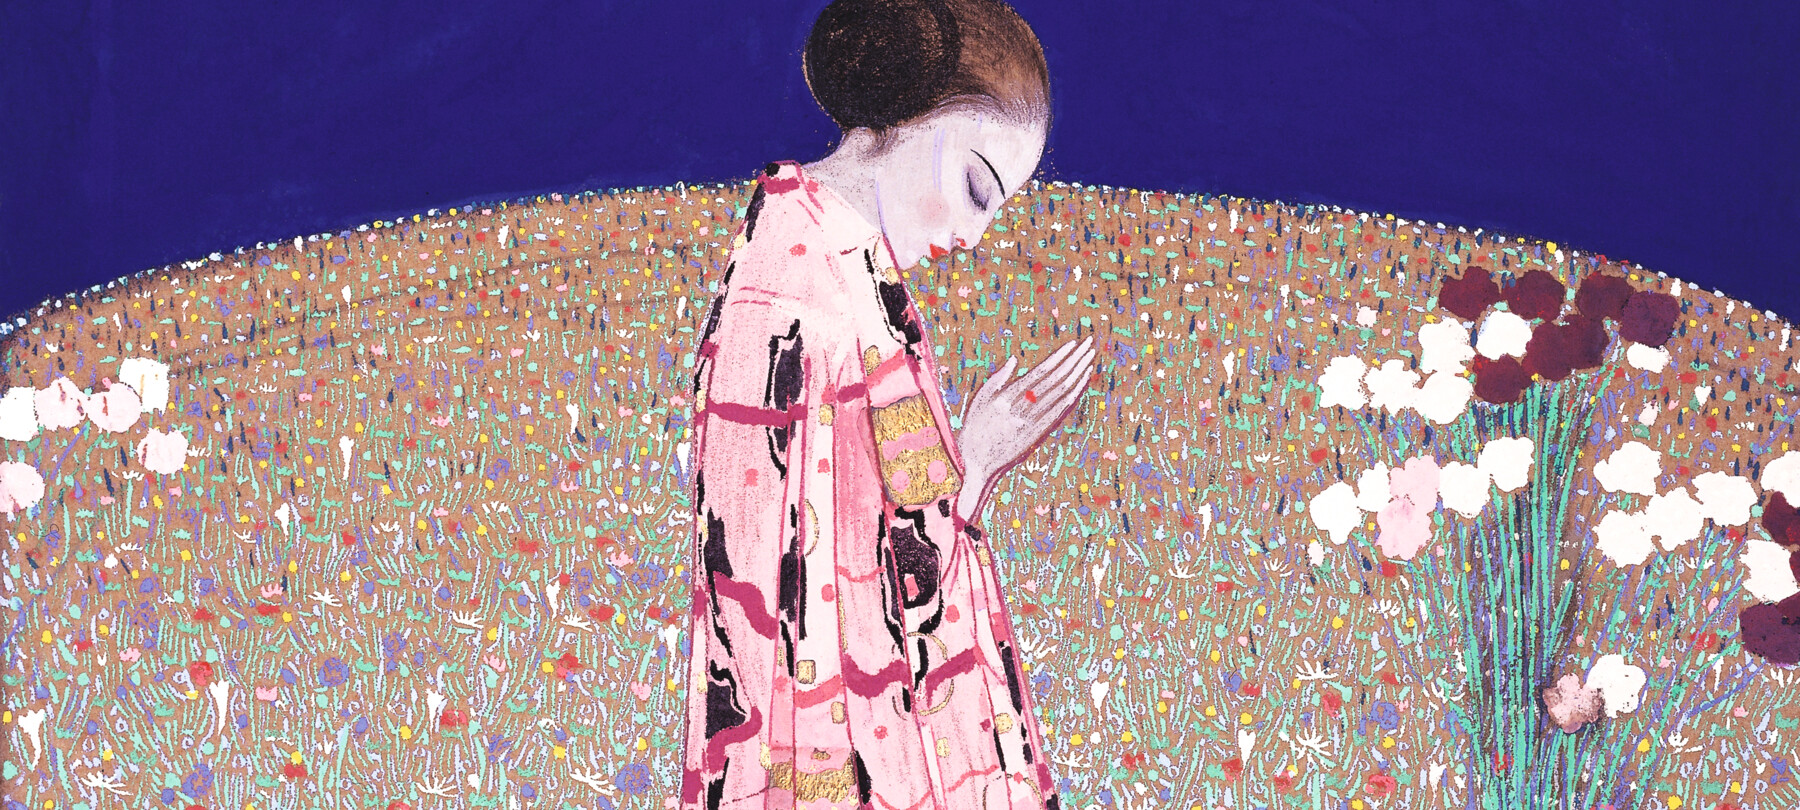 Klimt und die italienische Kunst: die Ausstellung im Mart in Rovereto